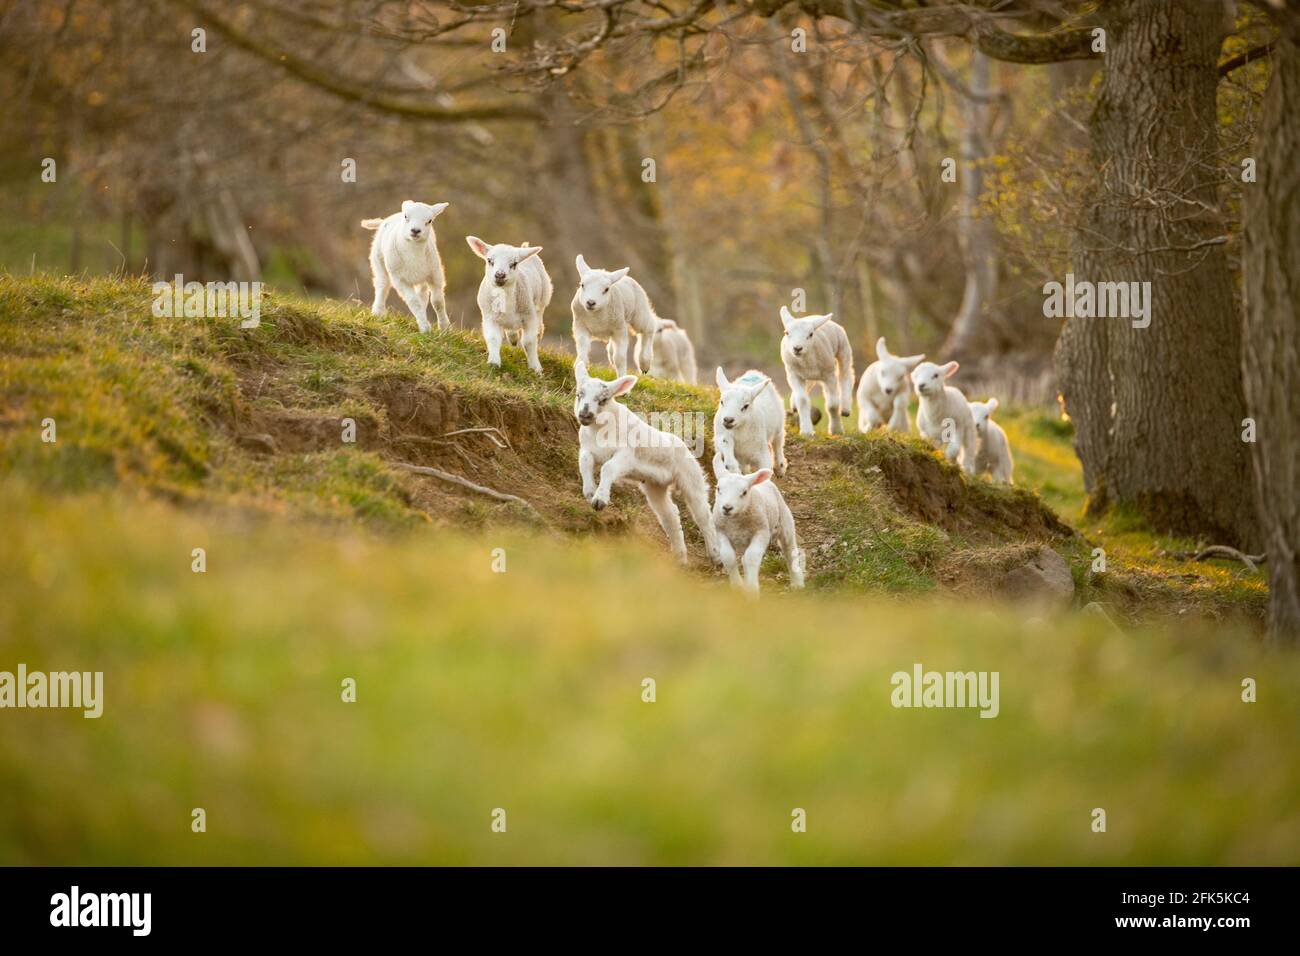 Un grupo de corderos blancos que corren a través de campos y pastos Foto de stock